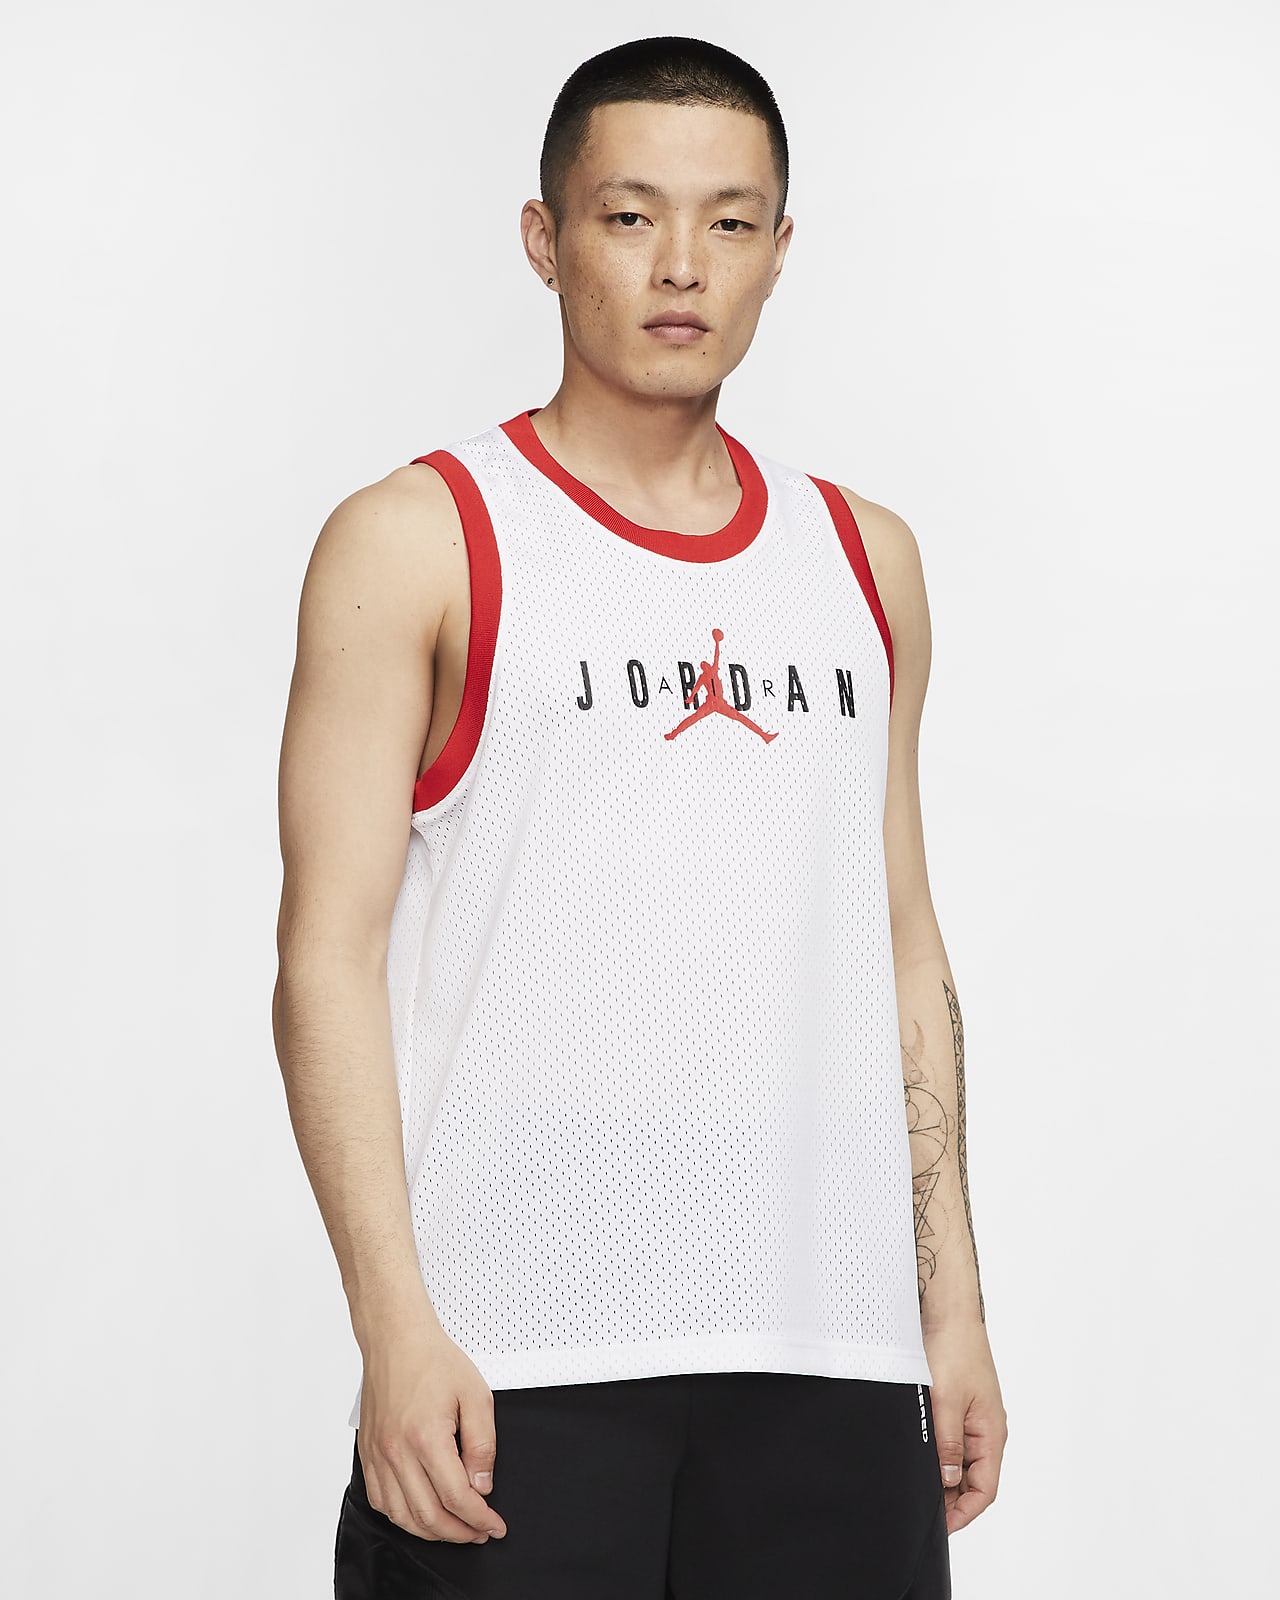 Nike公式 ジョーダン ジャンプマン スポーツ Dna メンズタンクトップ オンラインストア 通販サイト